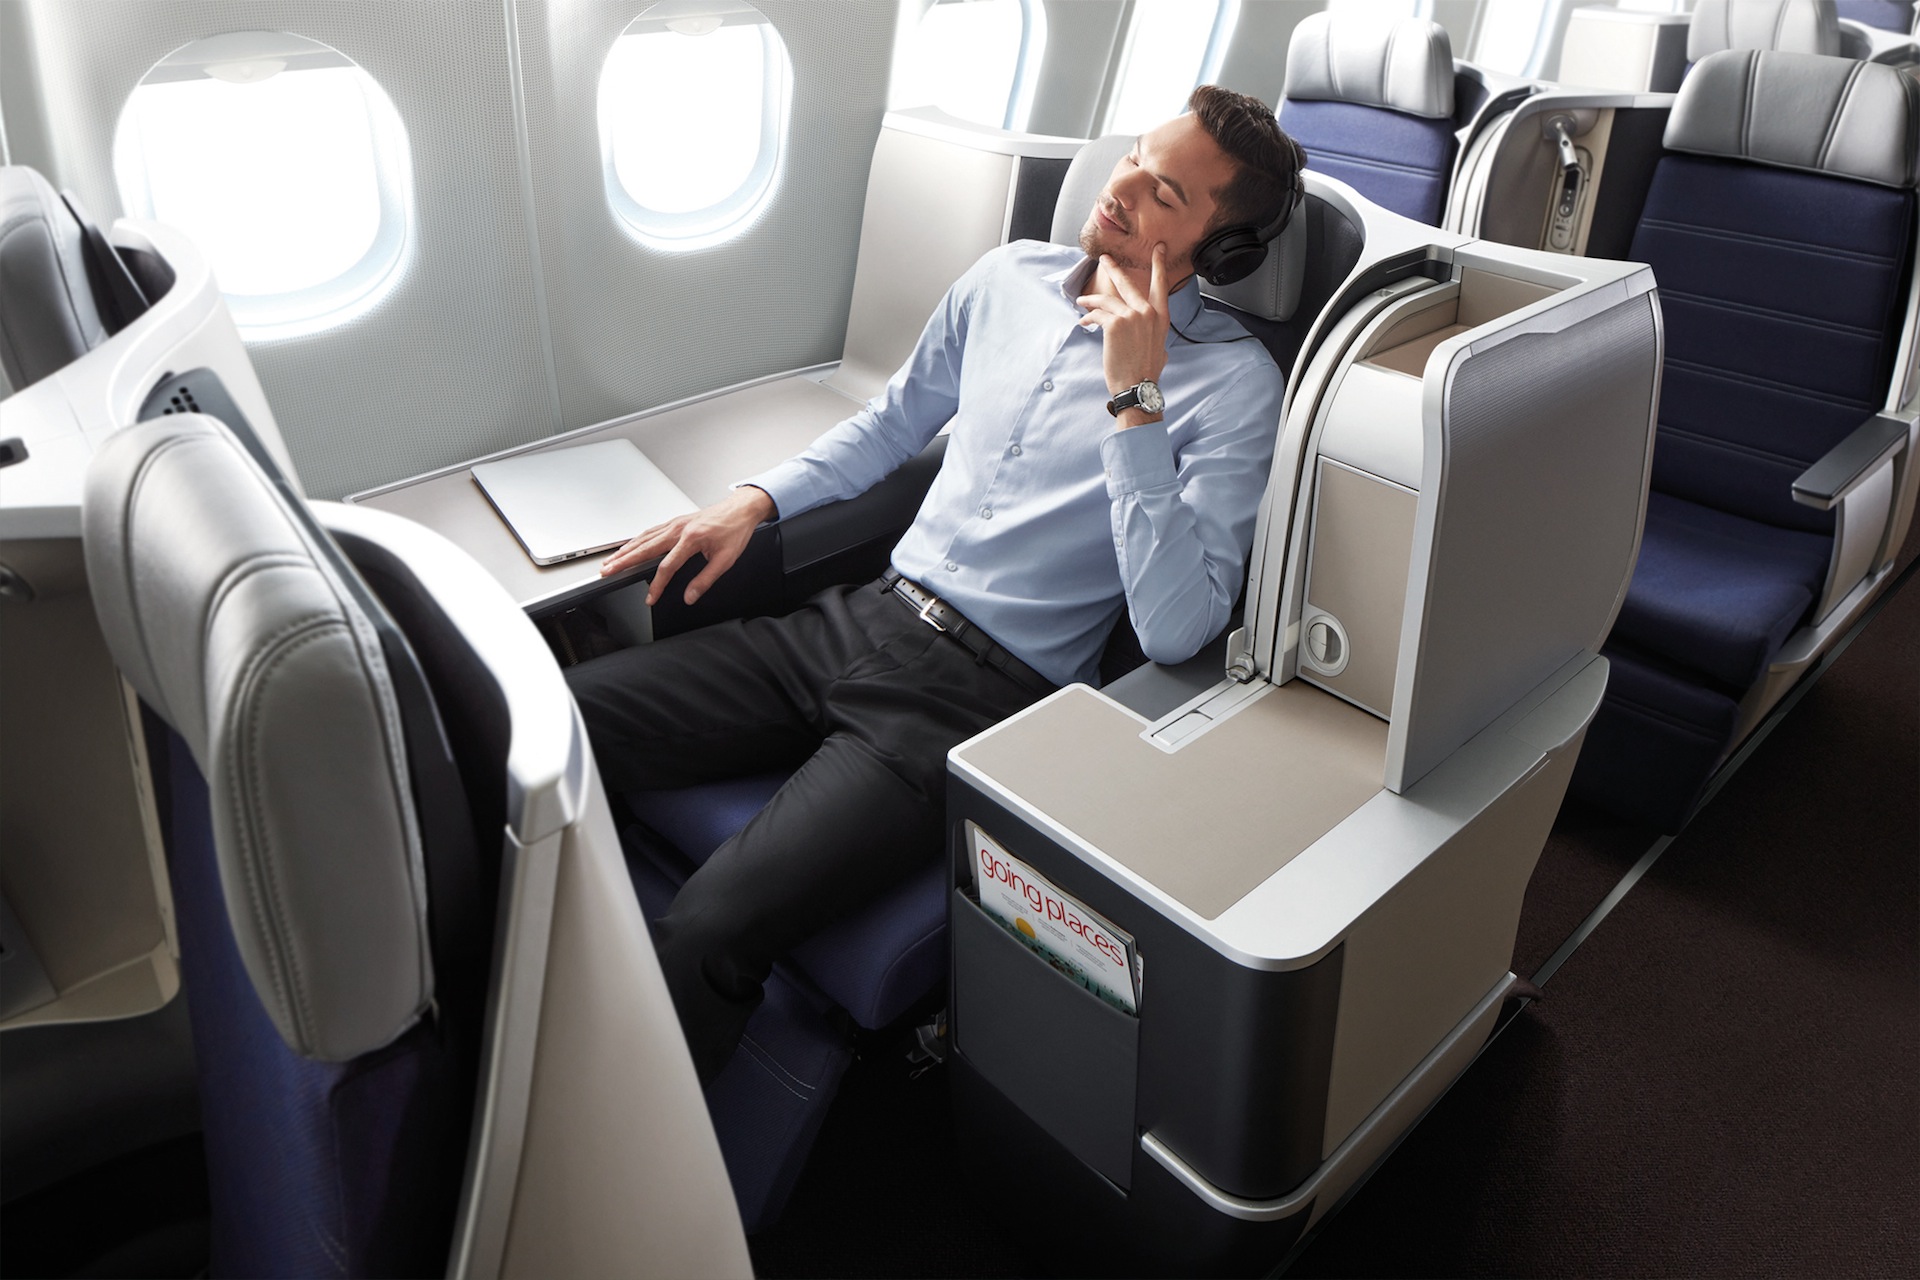 A330 Business Class Seats